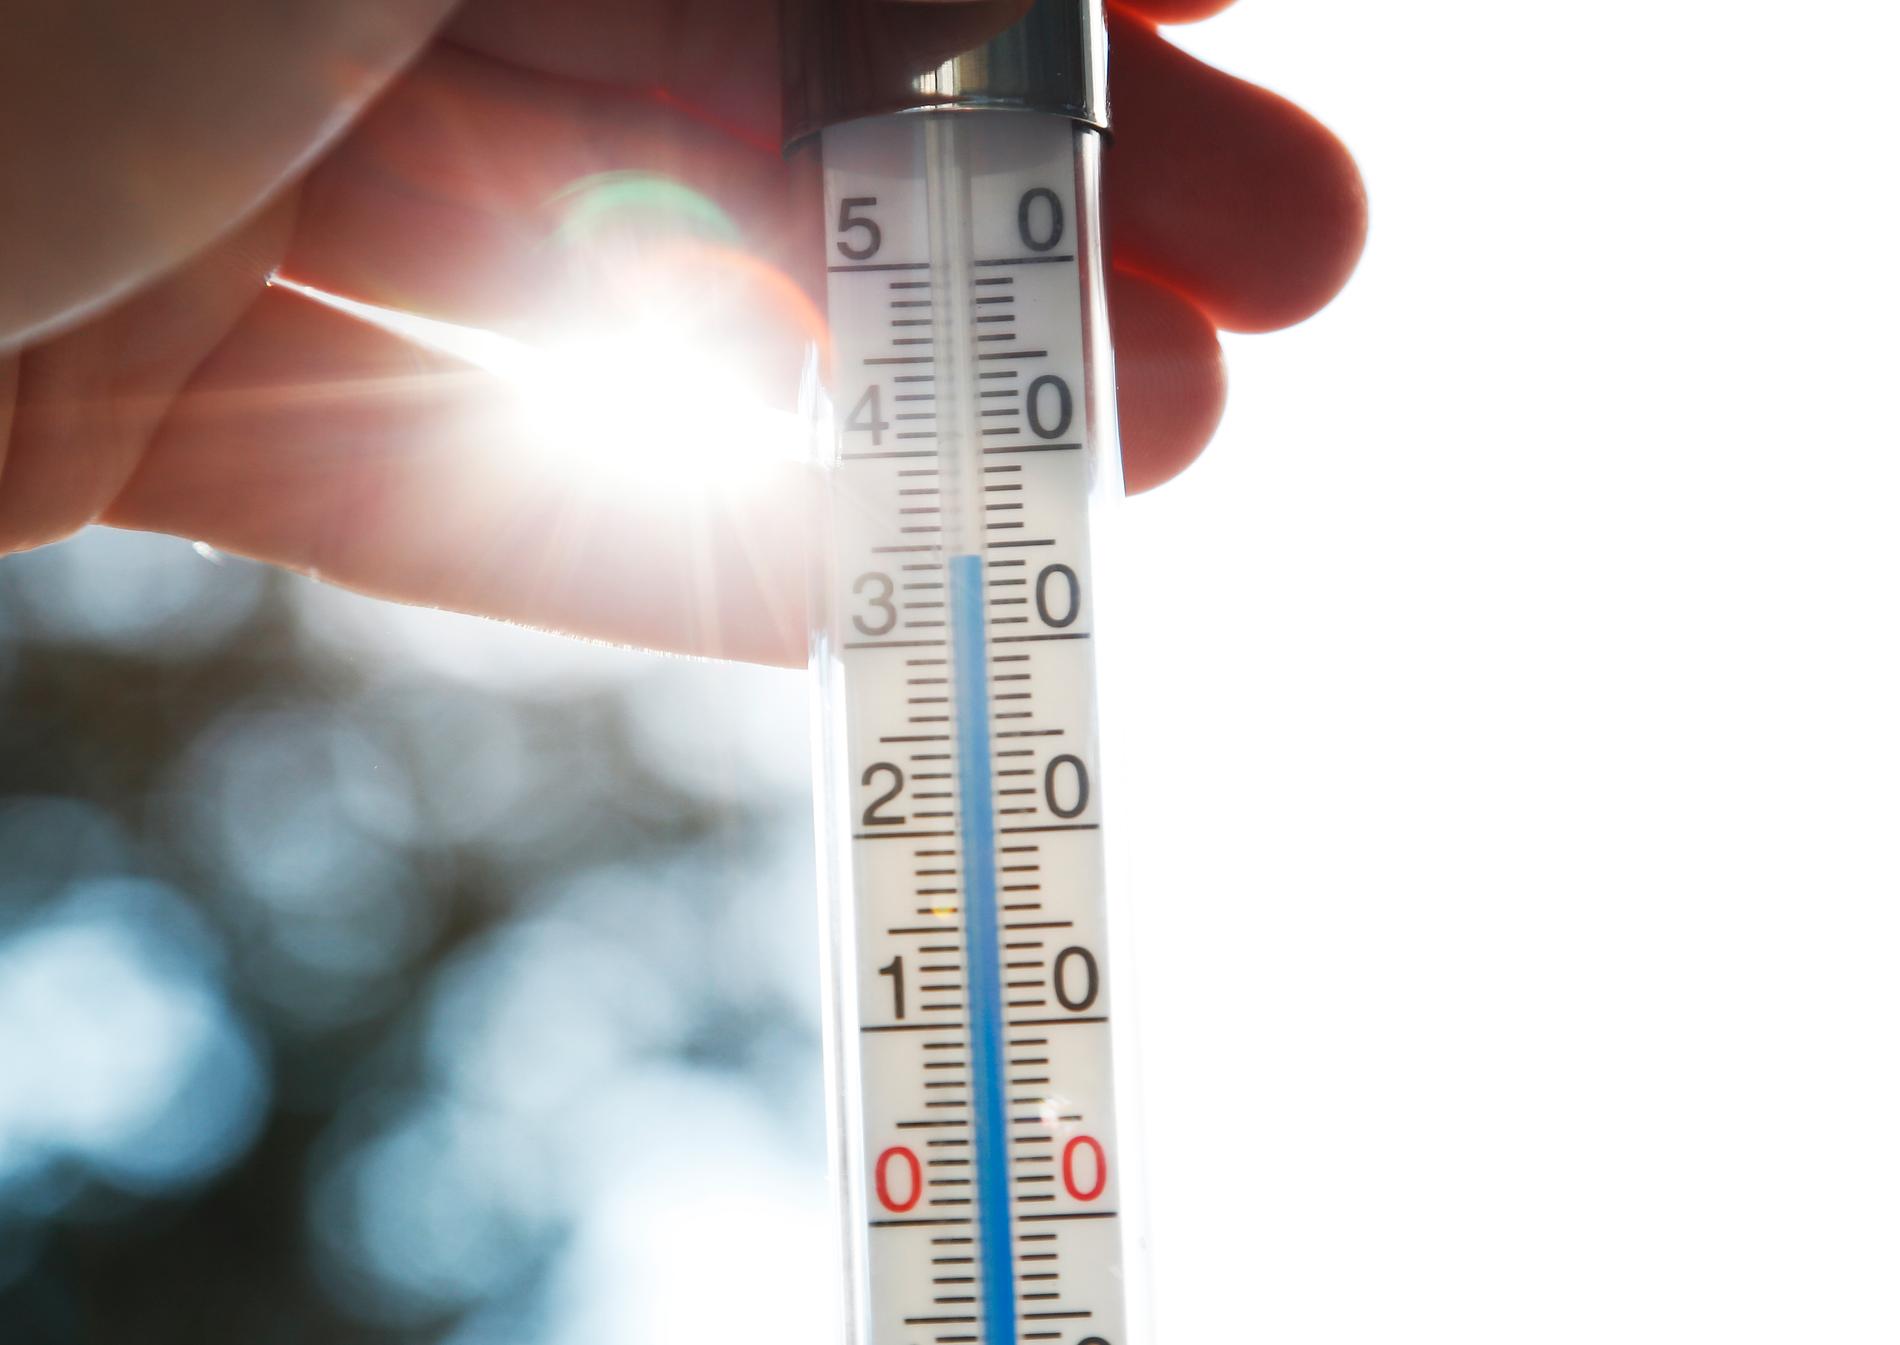 2019 var 0,6 grader varmare än genomsnittet 1981–2010.